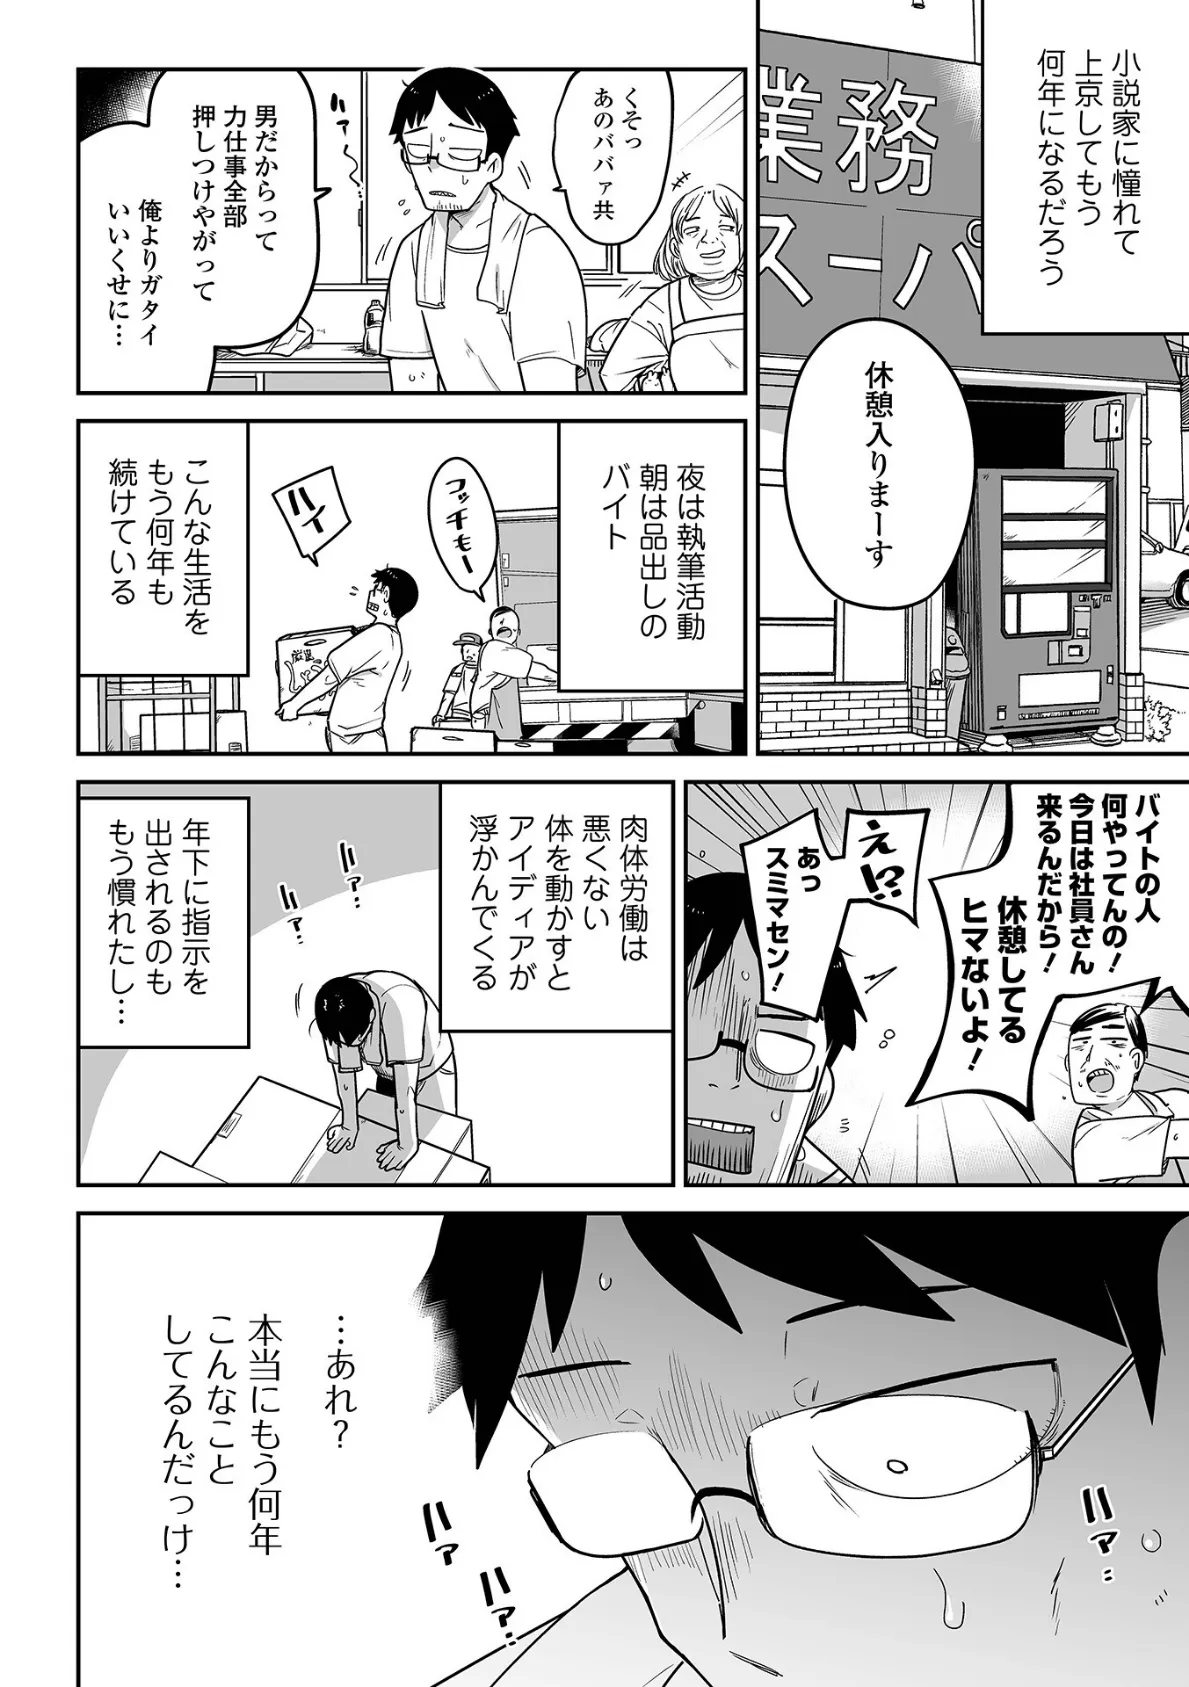 メスガキ vs ワナビおじさんハーフ版 4ページ